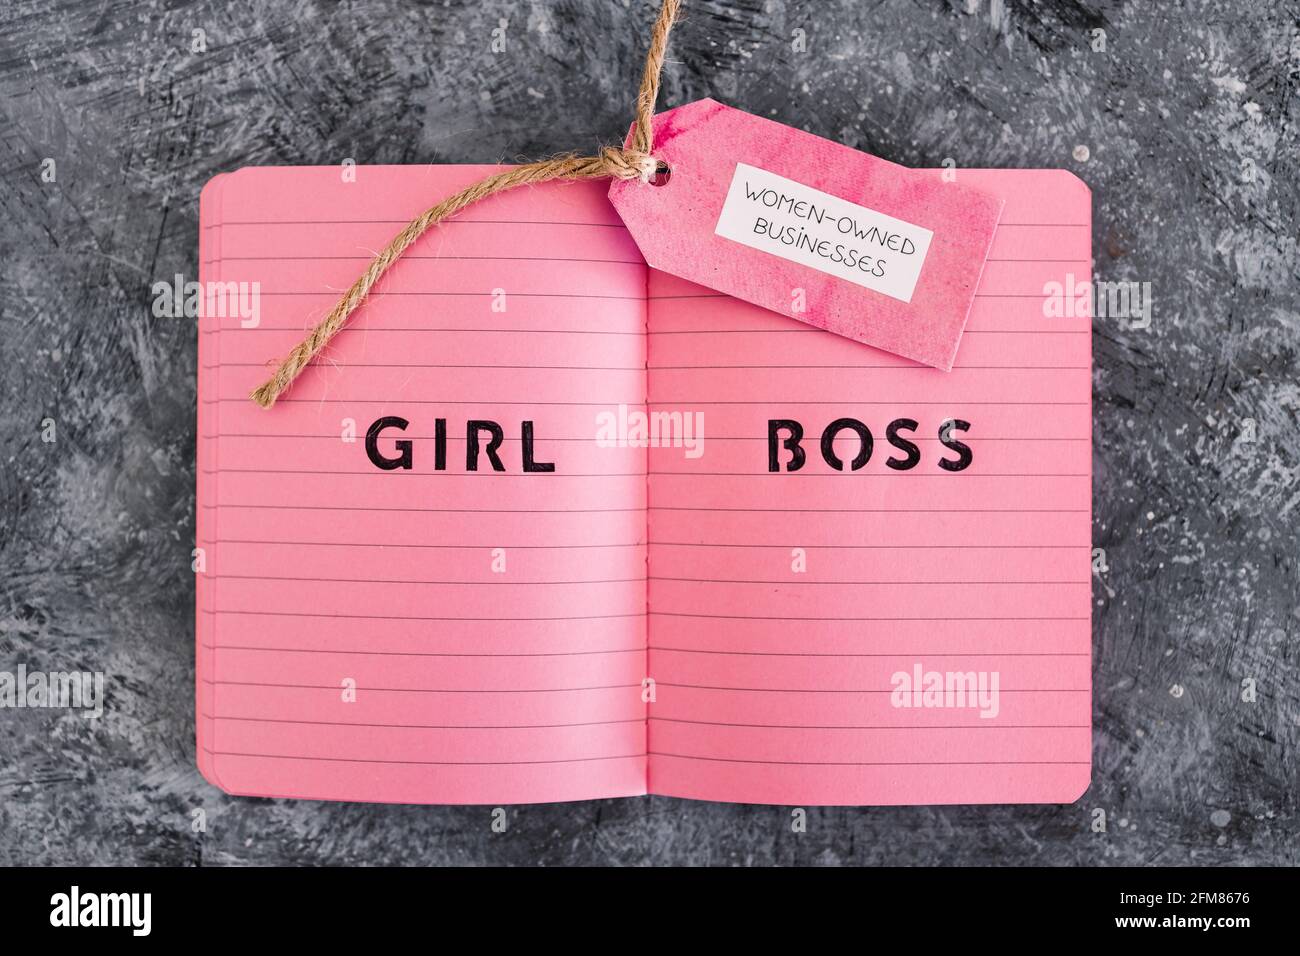 étiquette d'affaires appartenant à des femmes avec le texte de patron de fille sur le bloc-notes rose, soutenant l'égalité et l'égalité des chances Banque D'Images